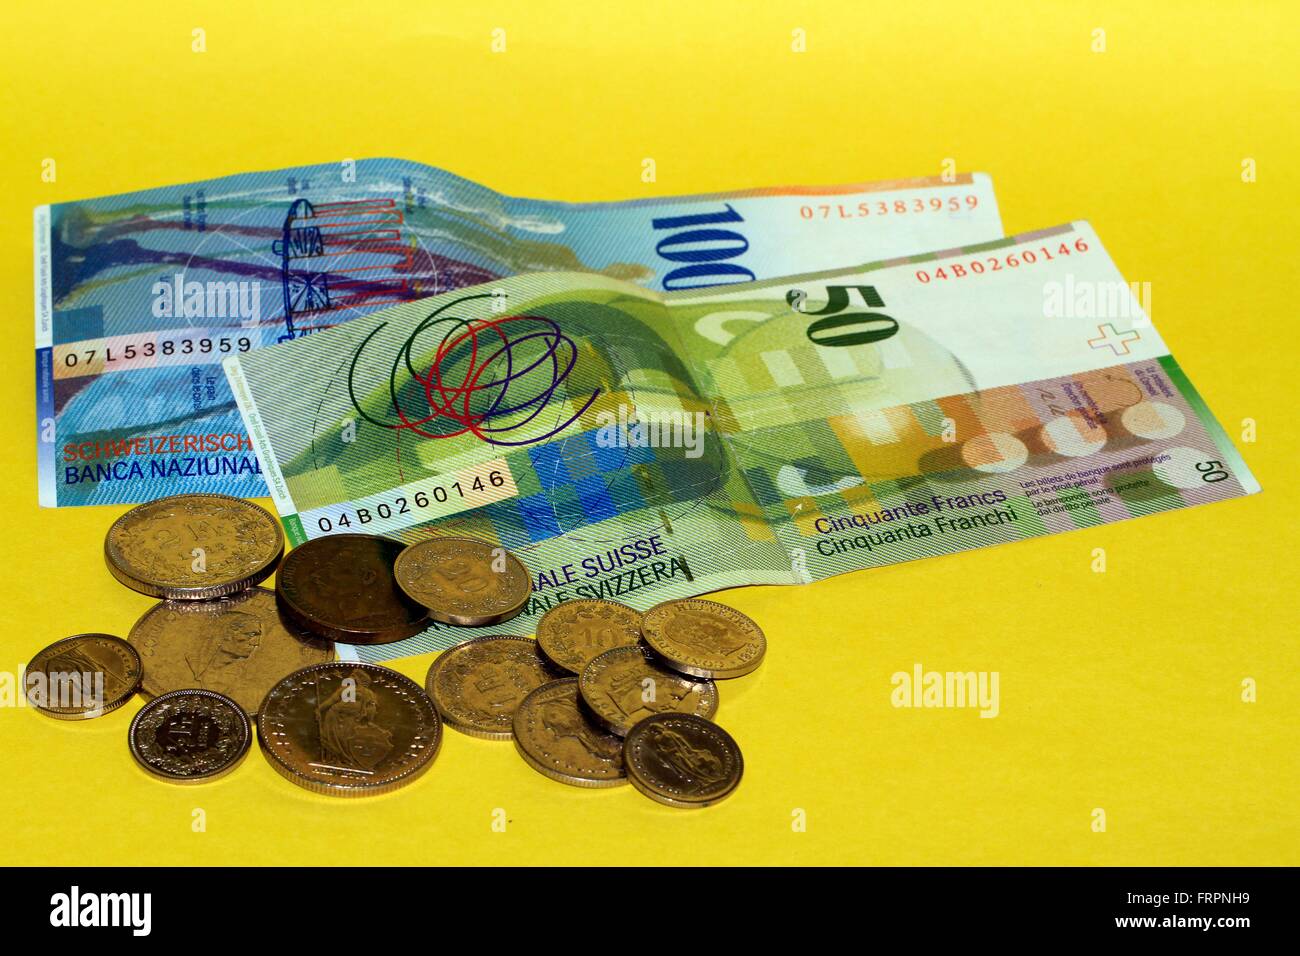 El franco suizo es la moneda de Suiza y Liechtenstein. Está dividido en 100 Rappen. Su abreviación ISO es de CHF, el símbolo de moneda es Fr. Para el céntimo de cantidades es la abreviatura de Rp. Suiza, Europa Fecha: Marzo 19, 2016 Fecha: Marzo 19, 20 Foto de stock